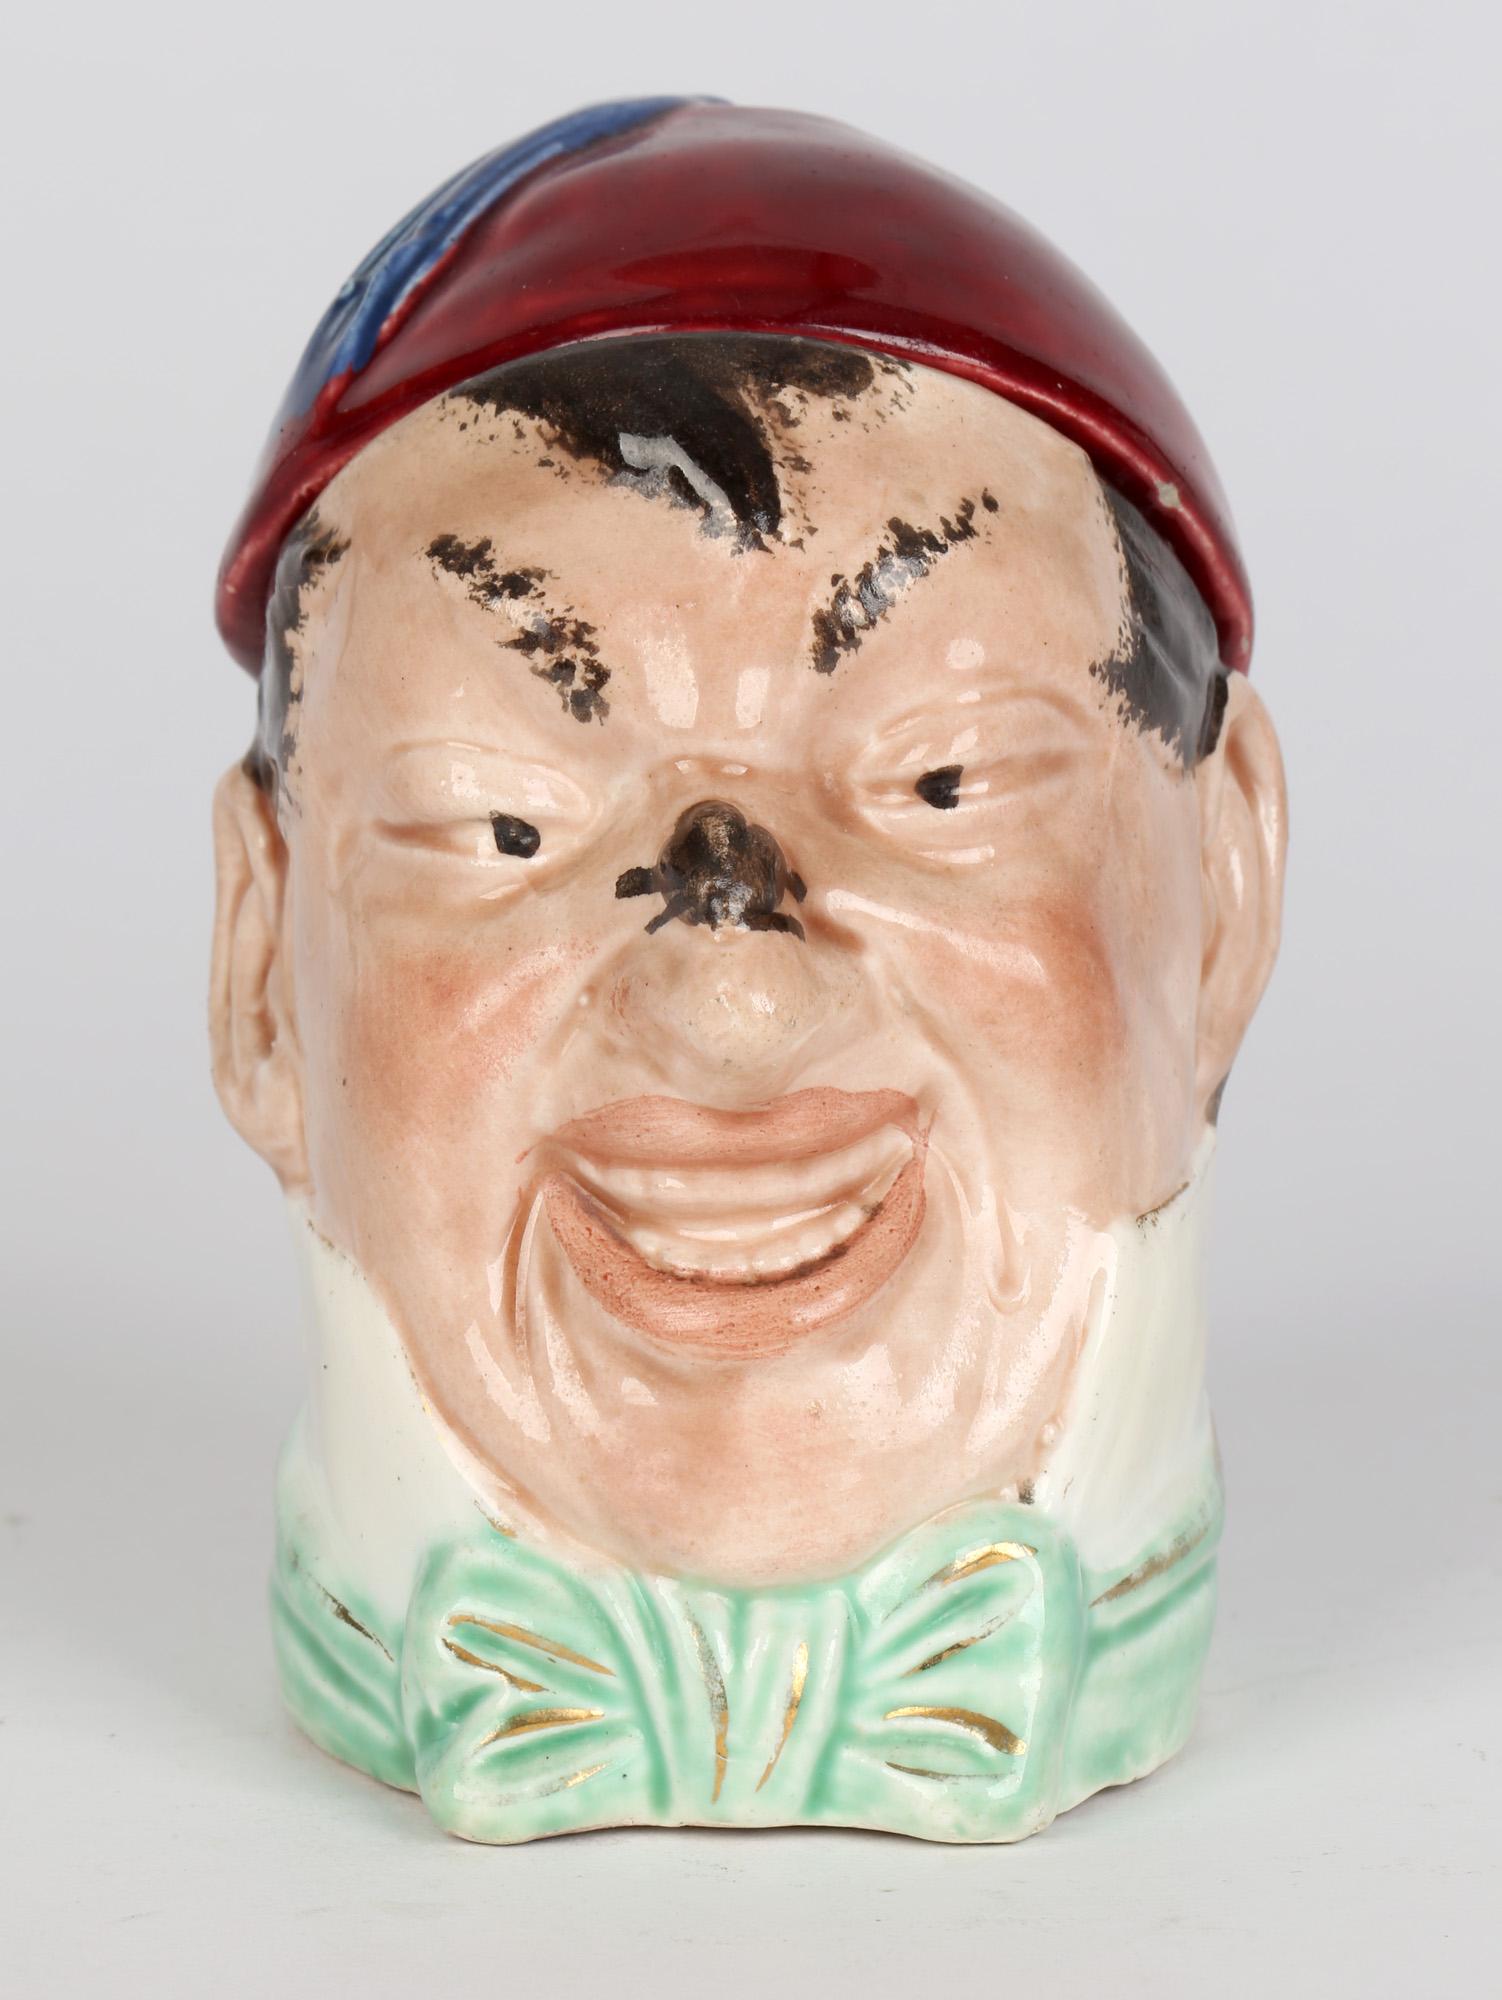 Eine reizvolle antike Neuheit Continental Majolika Keramik Deckel Charakter Tabakdose eines Mannes trägt einen Fez Art Hut aus dem späten 19. Jahrhundert. Der Krug ist als Kopf eines Mannes modelliert, der ein Insekt auf seiner Nase beobachtet. Er